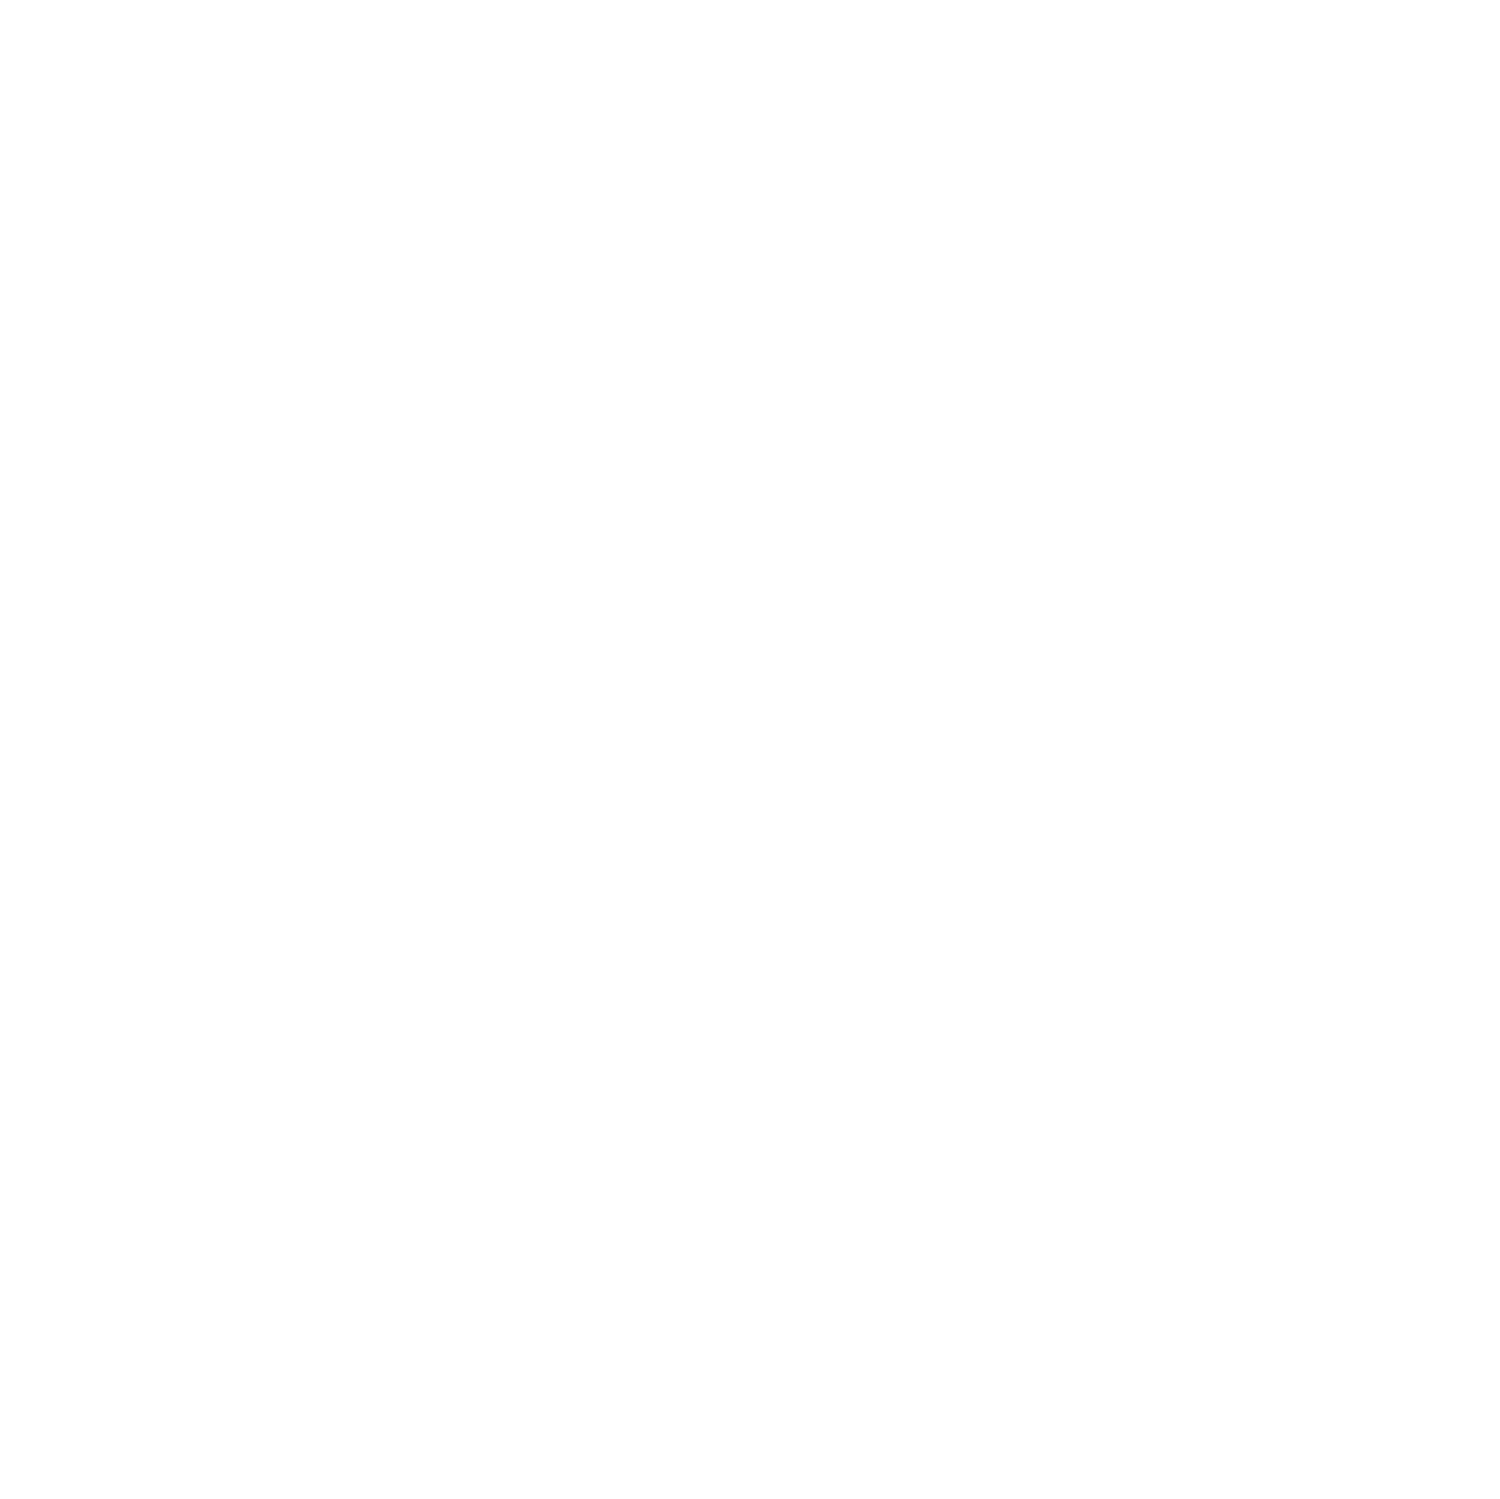 Trishan Patel Coaching